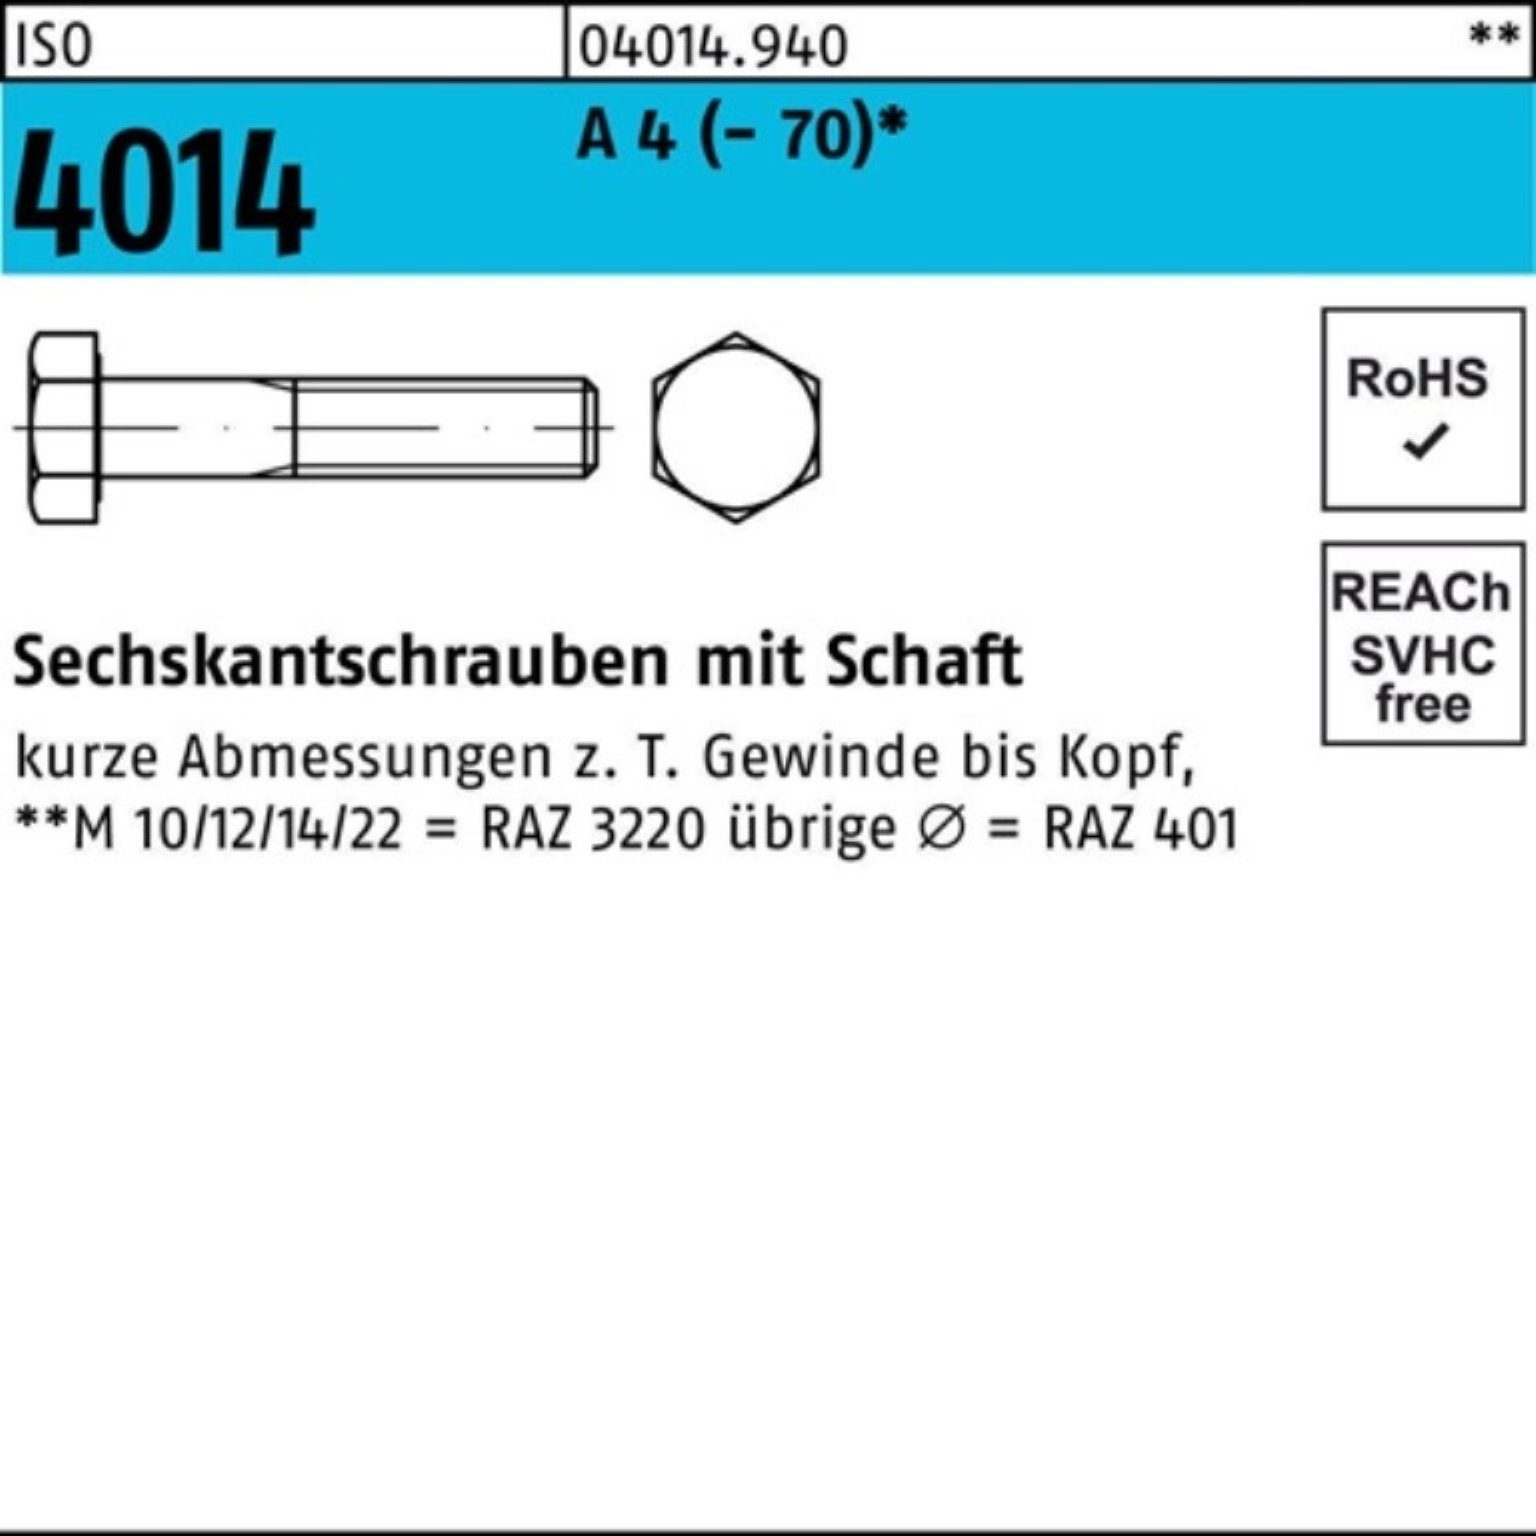 Bufab Sechskantschraube 100er 4 30 4014 ISO 100 Pack (70) Schaft A M5x Sechskantschraube St